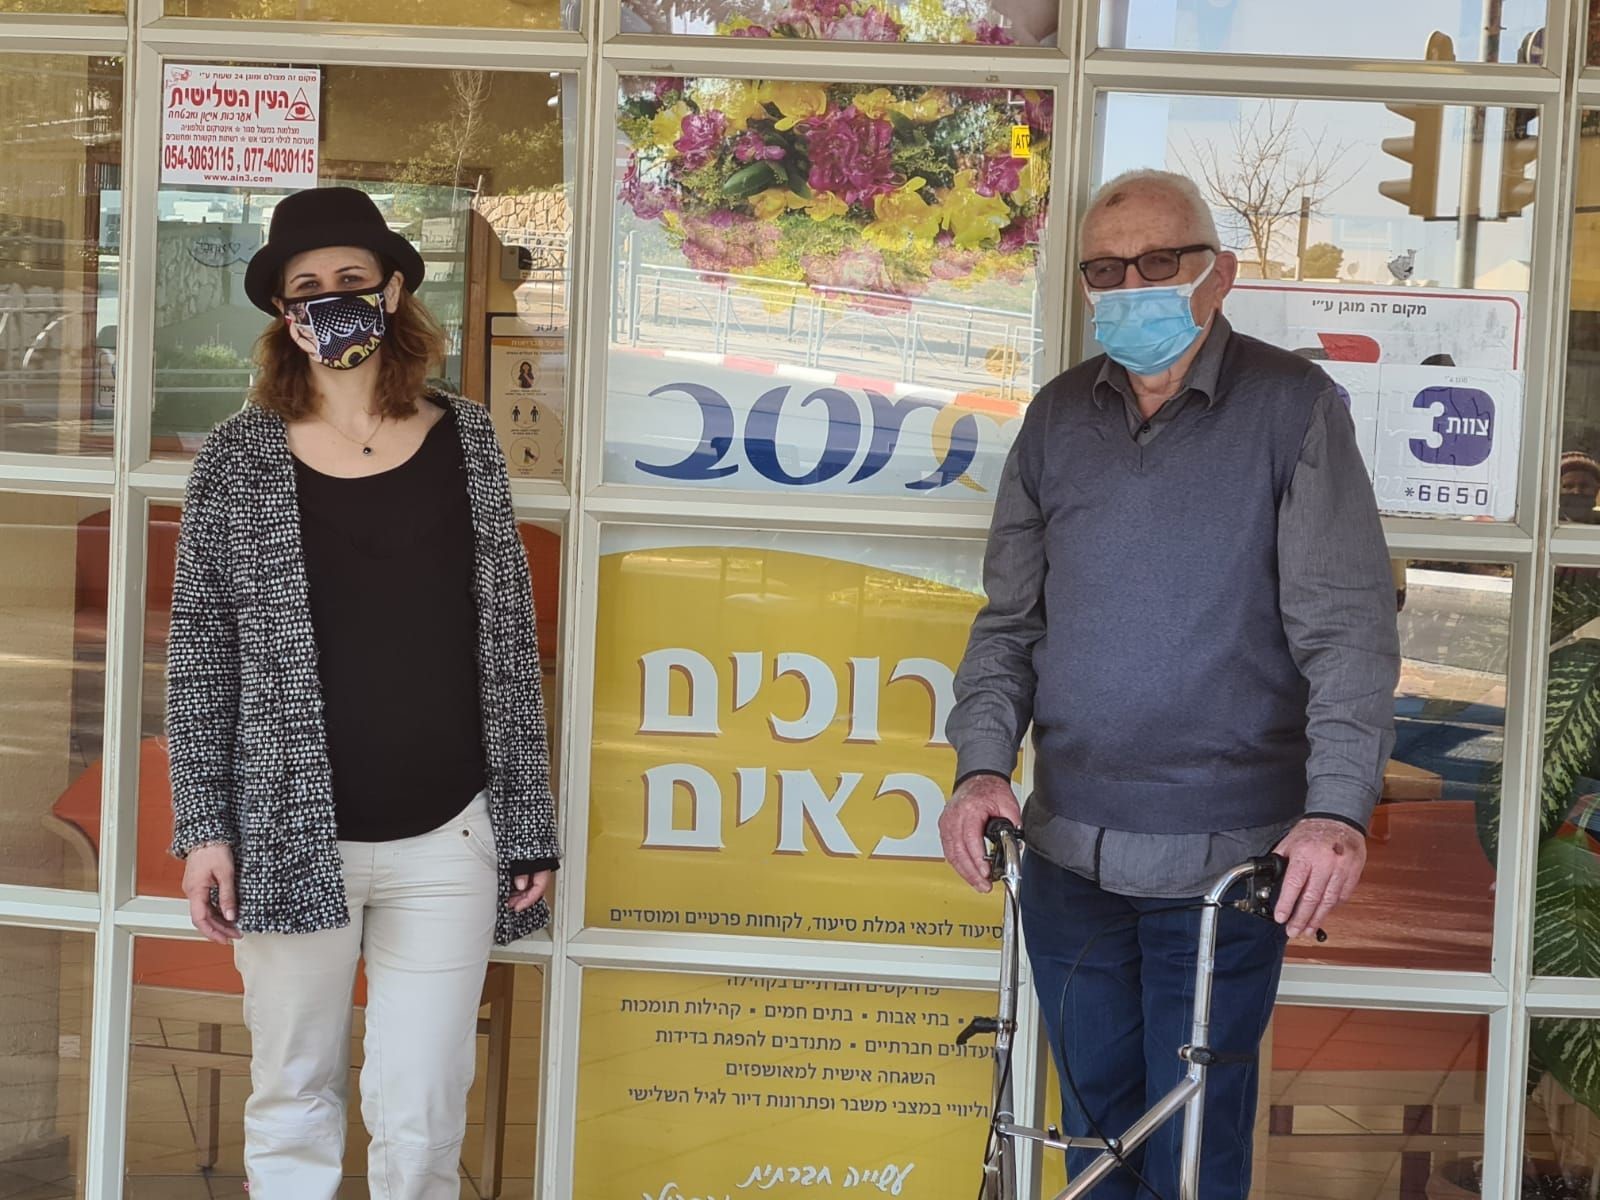 שני מרכזי יום לקשישים בראשון לציון  יופעלו מעתה על ידי עמותת מטב  ויציעו מסגרת חברתית-טיפולית לאזרחים הוותיקים תושבי העיר